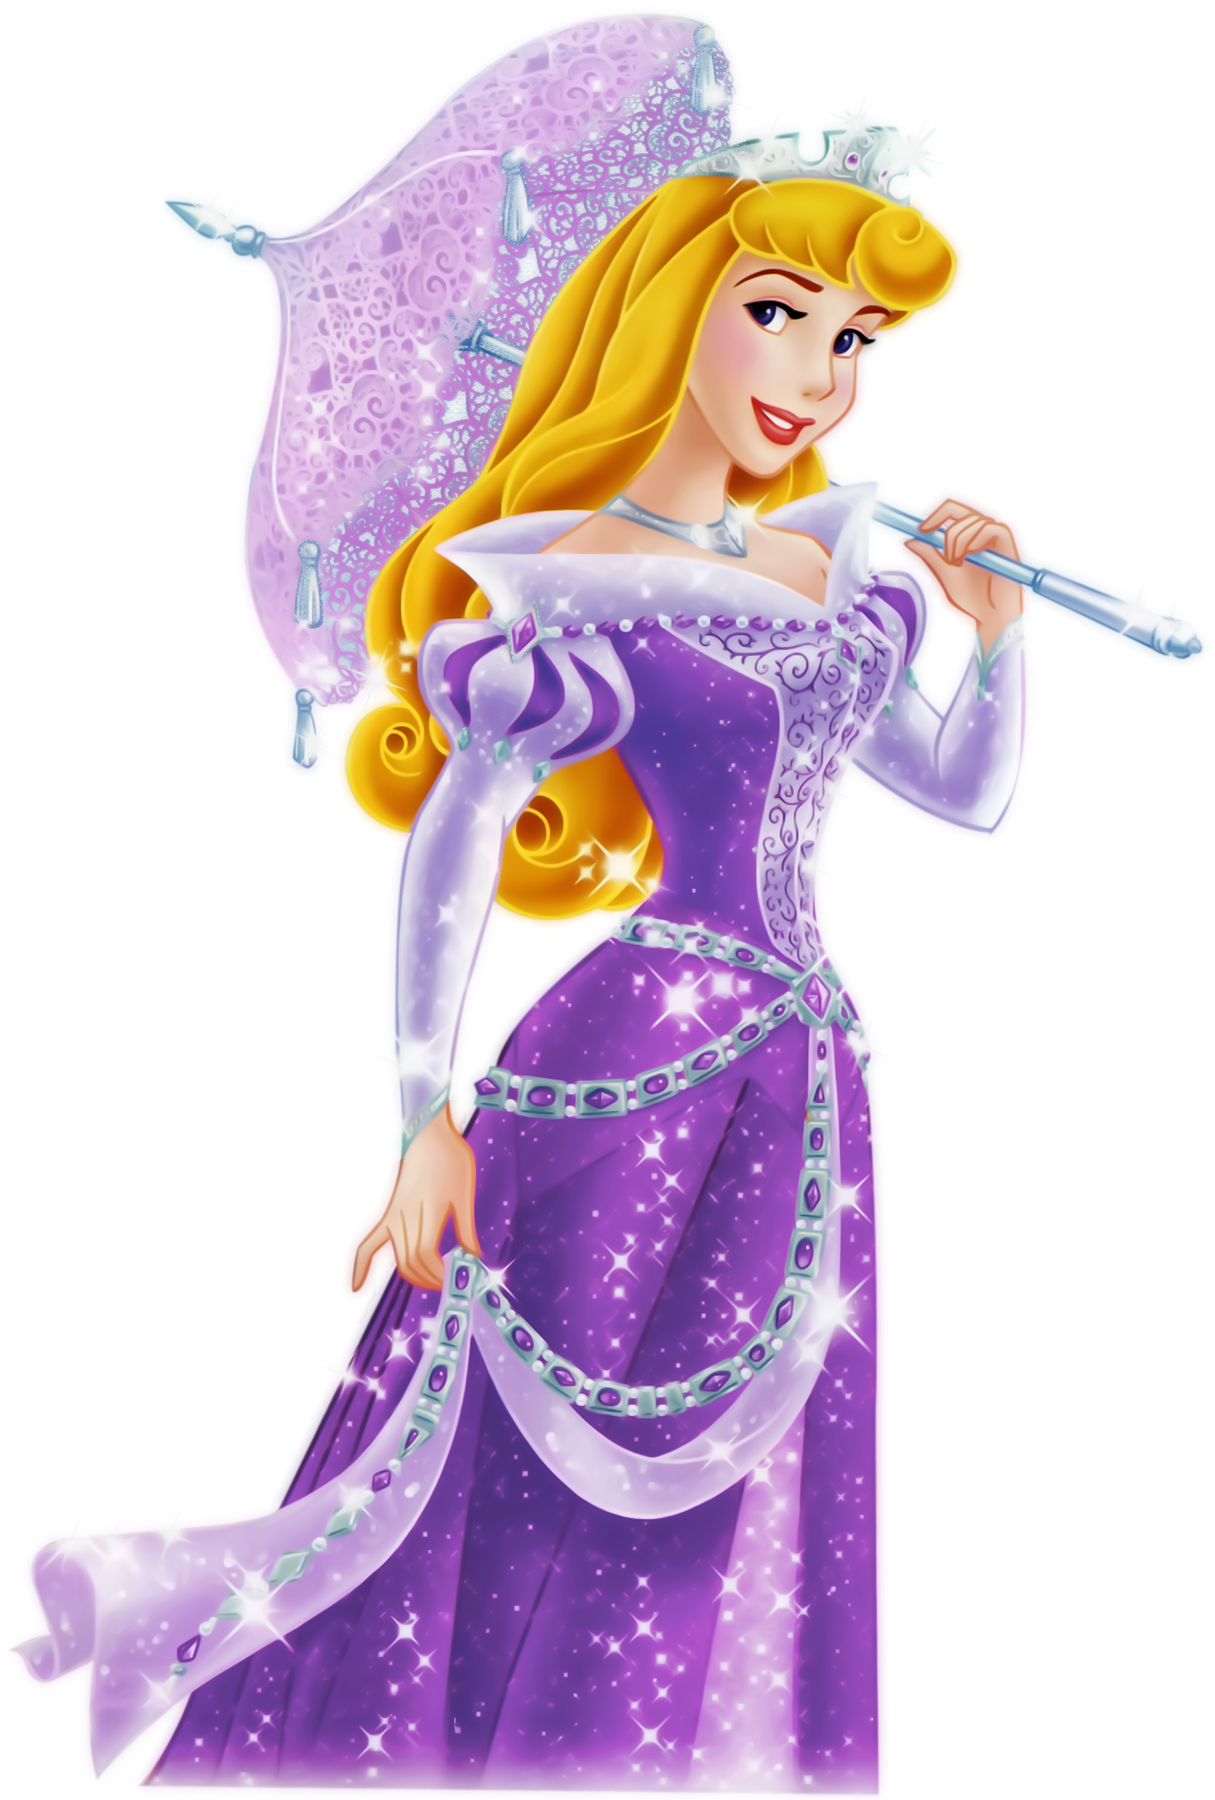 Princess Aurora in Purple #23 by MermaidMelodyEdits on DeviantArt